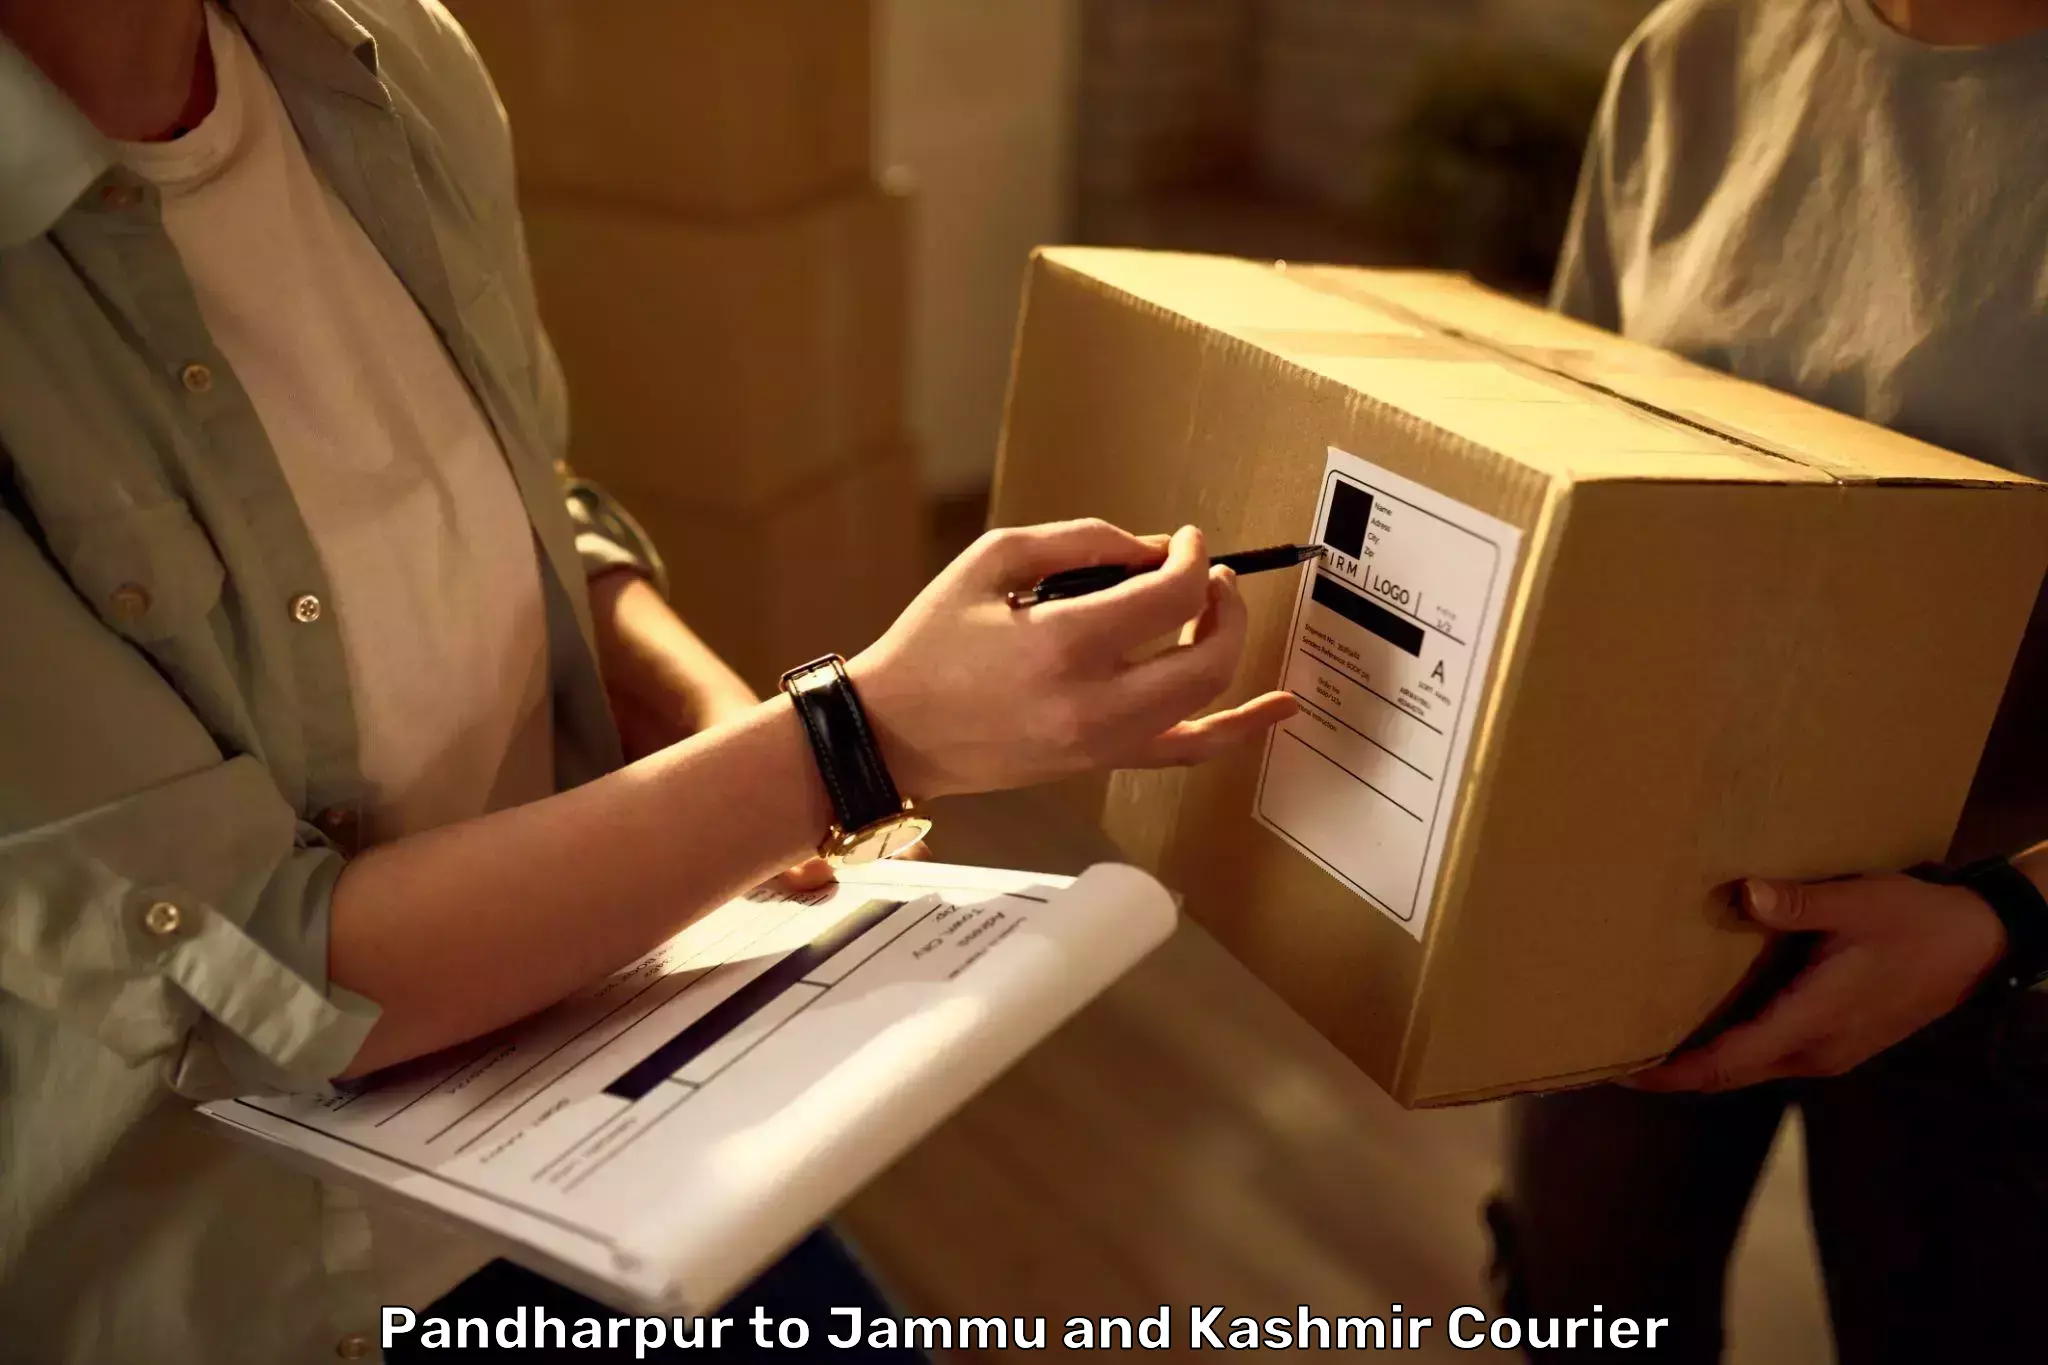 Luggage shipment processing in Pandharpur to Srinagar Kashmir